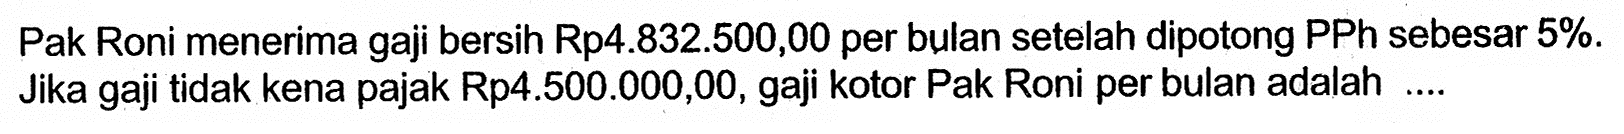 Pak Roni menerima gaji bersih Rp4.832.500,00 per bulan setelah dipotong PPh sebesar 5%. Jika gaji tidak kena pajak Rp4.500.000,00, gaji kotor Pak Roni per bulan adalah ....